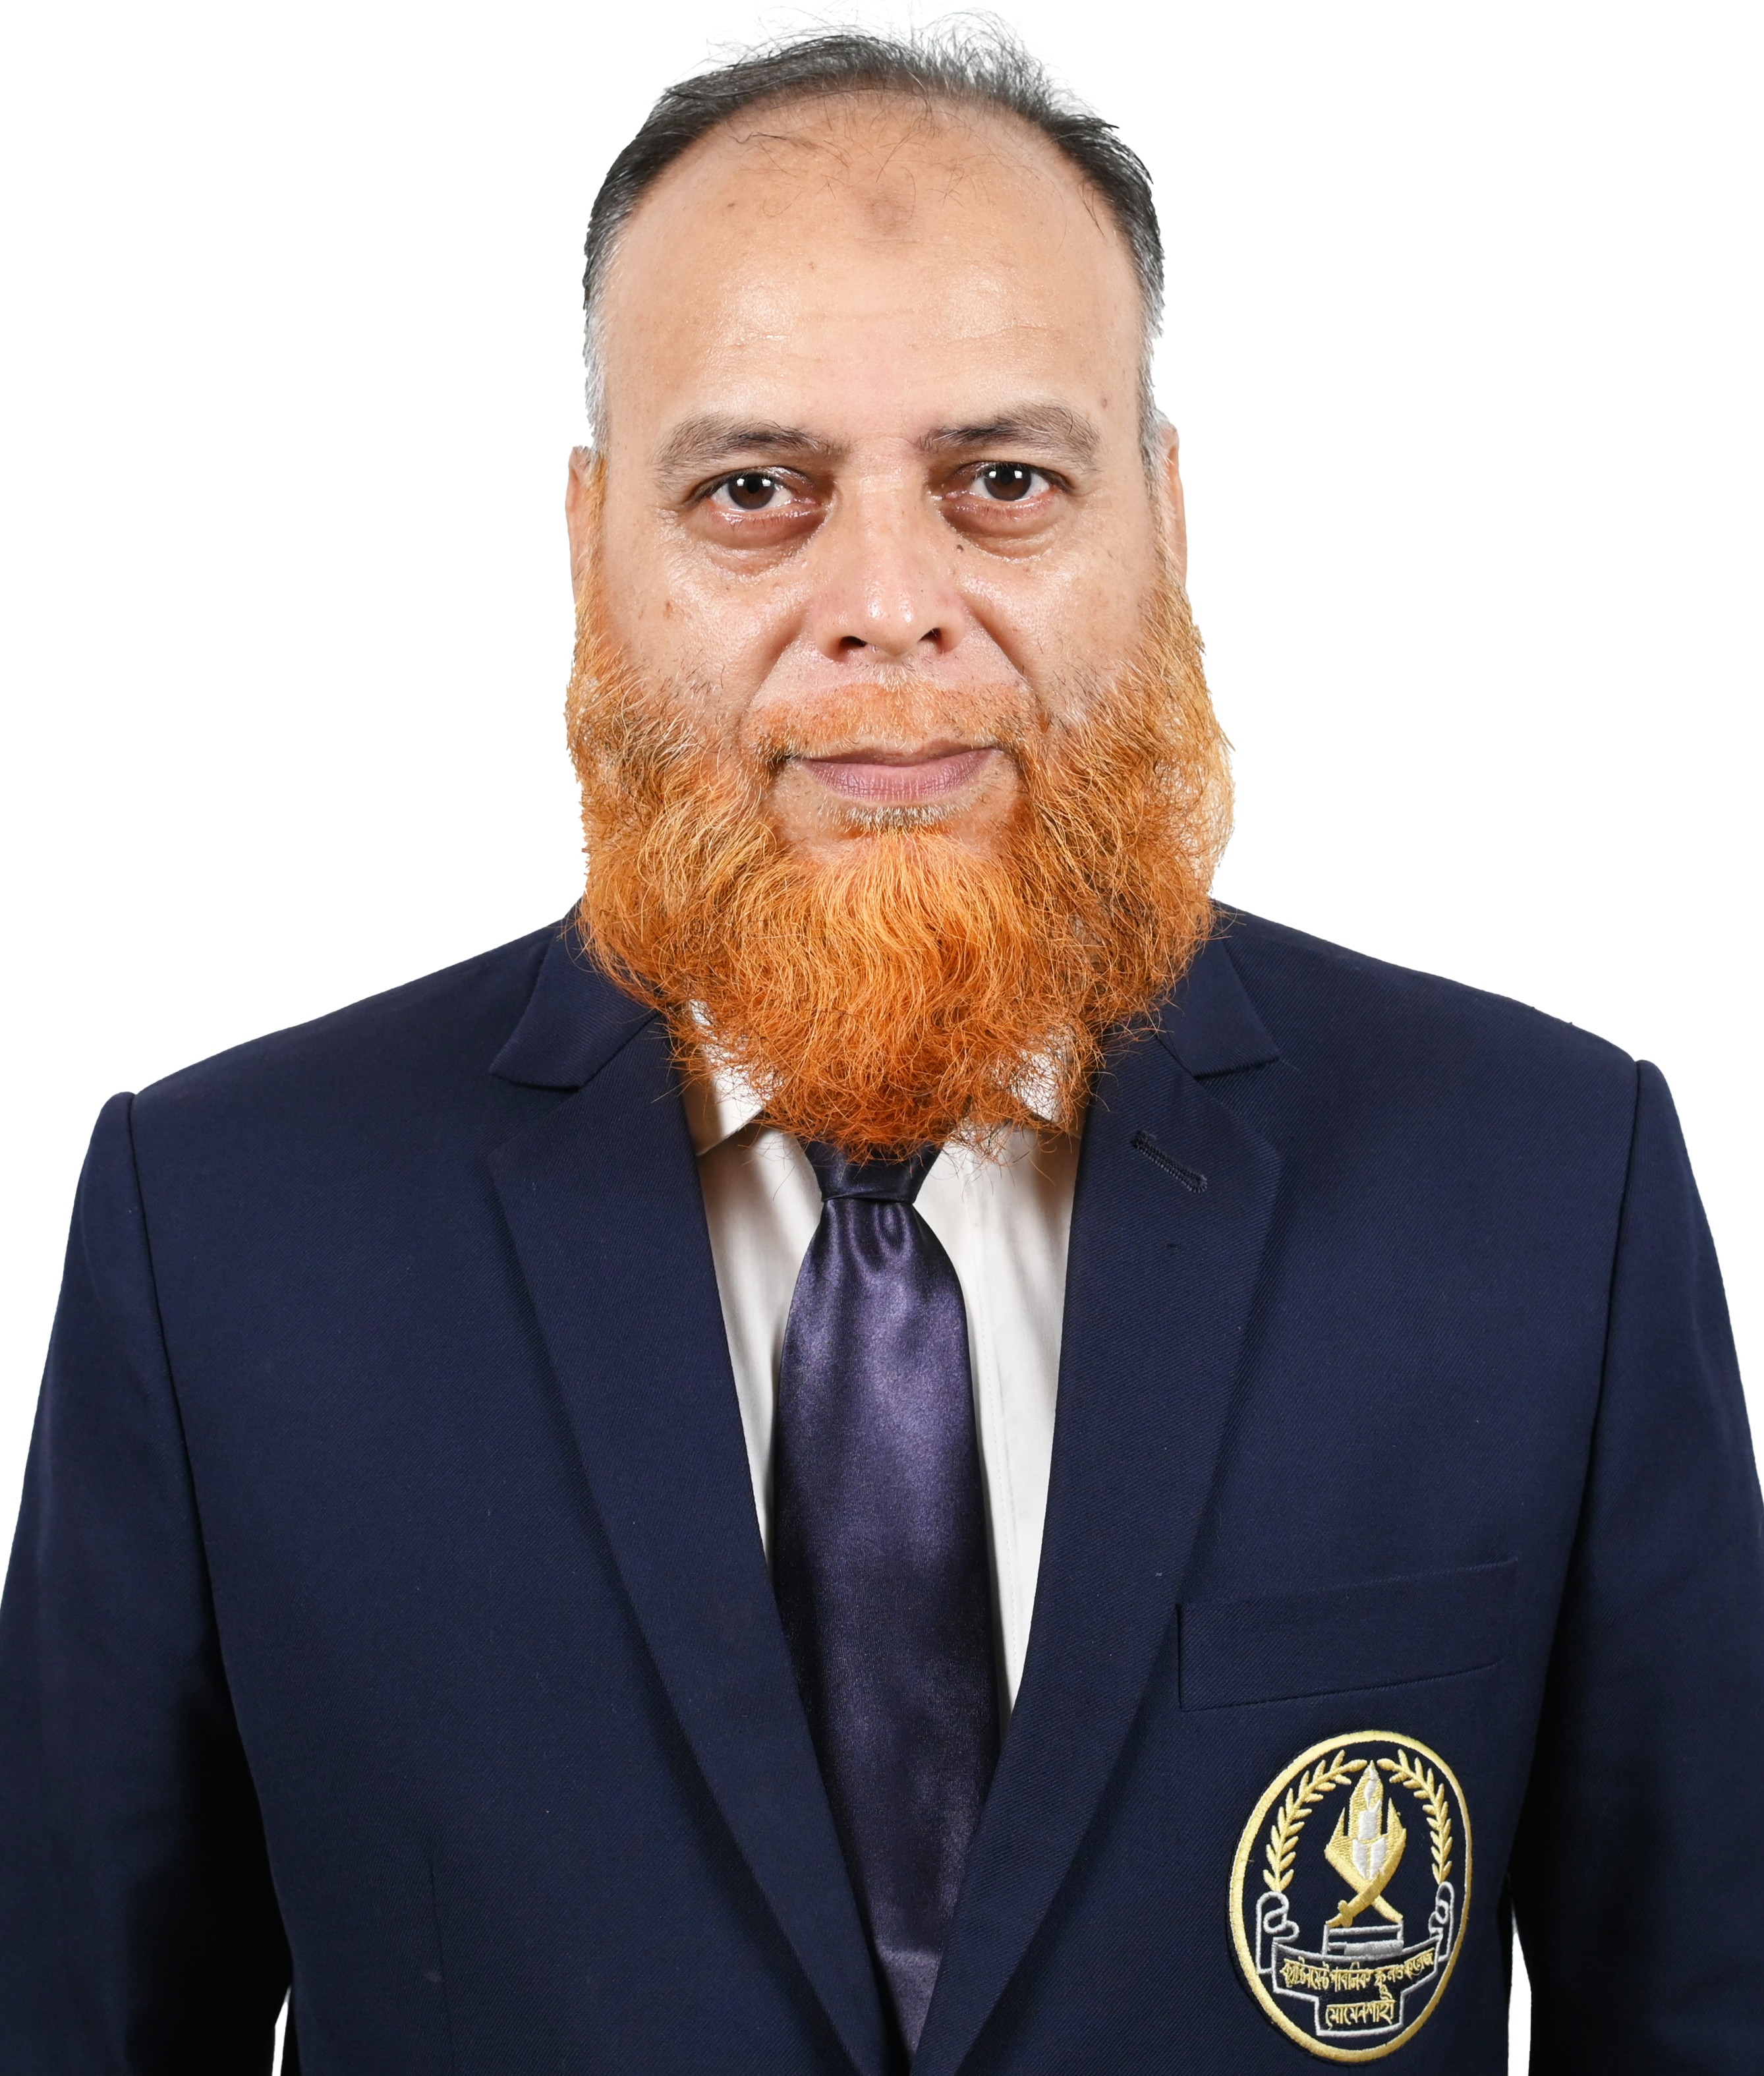 Md. Mazharul Islam Chowdhury